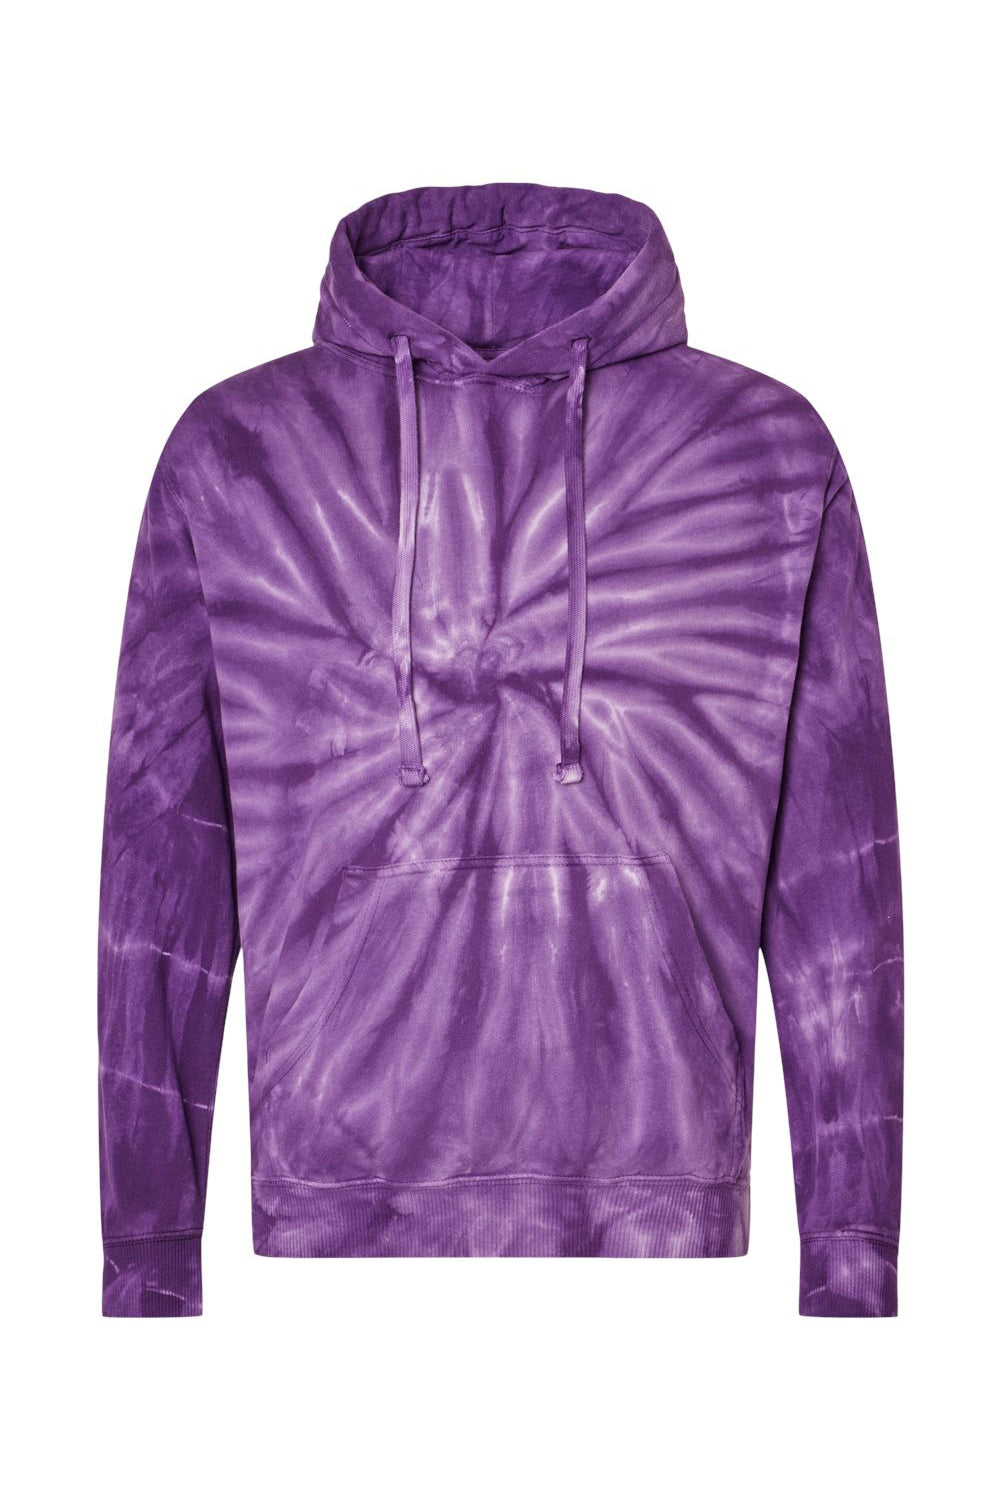 Dyenomite 854CY Mens Cyclone Tie Dyed Hooded Sweatshirt Hoodie Purple Flat Front